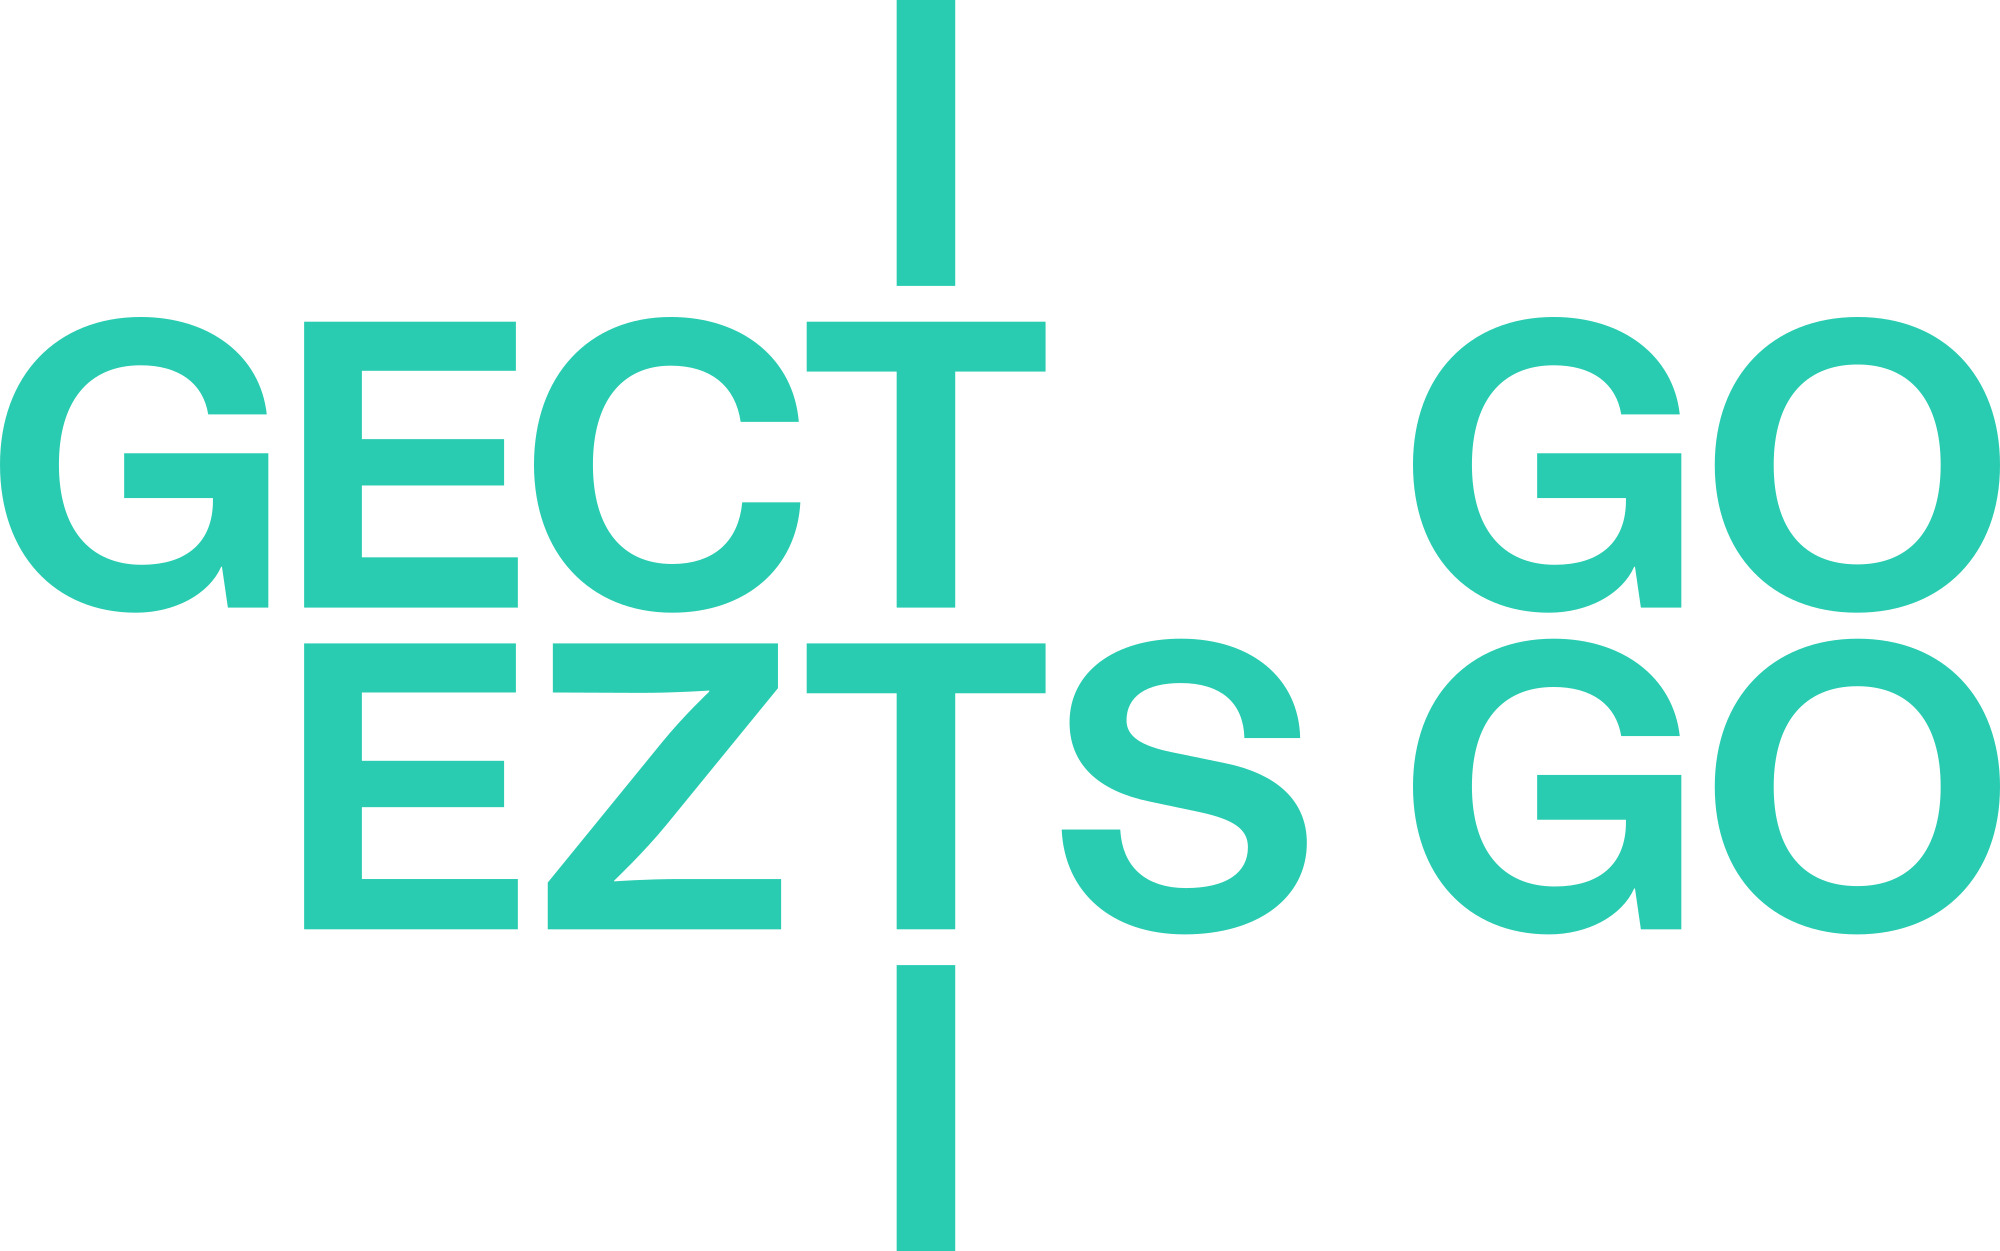 EZTS_GO_logo